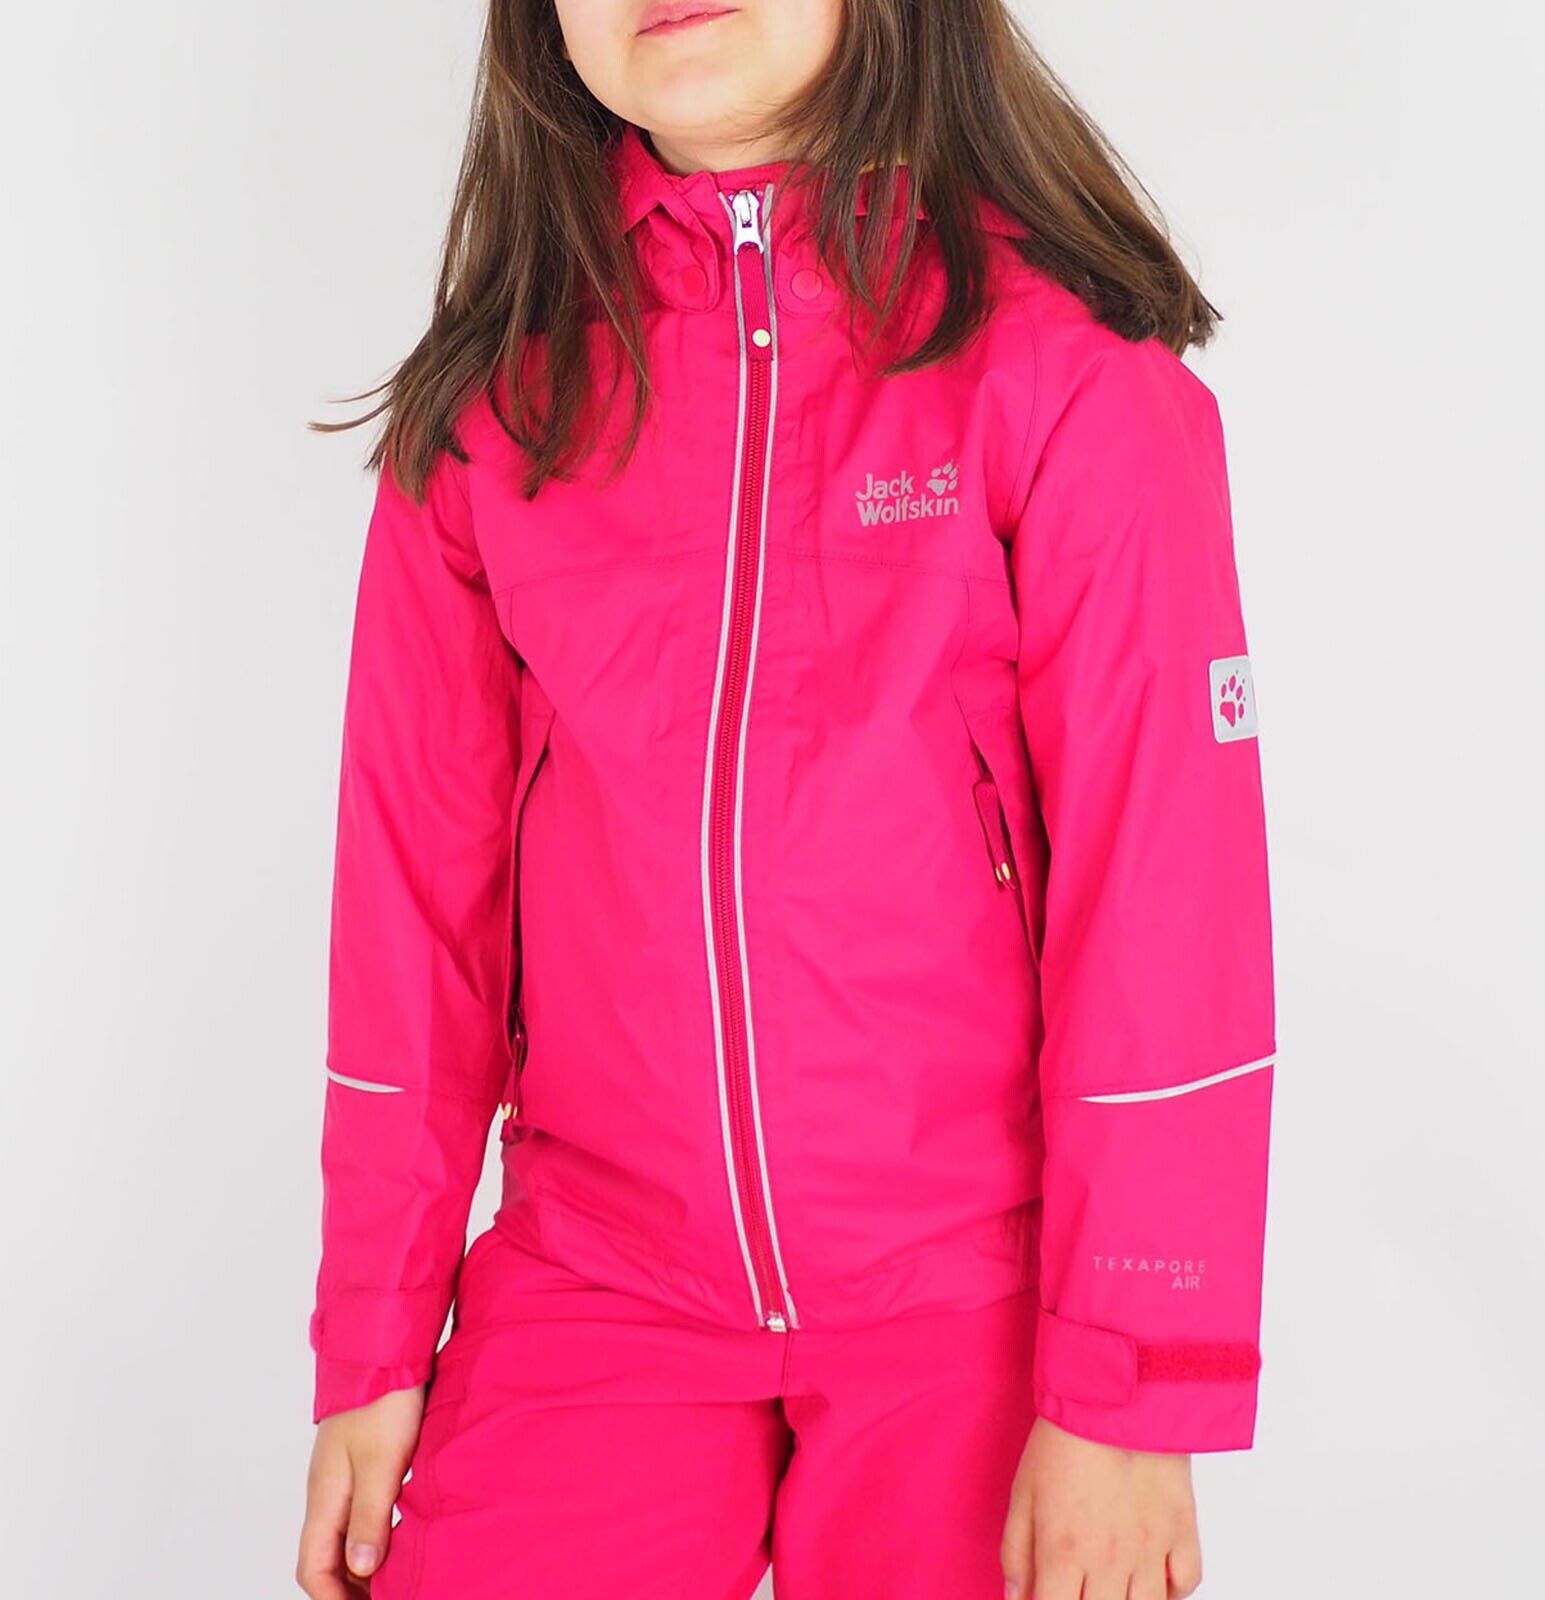 Girls Jack Wolfskin Crosswind Texapore 1604781 Azalea Red Waterproof Jacket - London Top Style